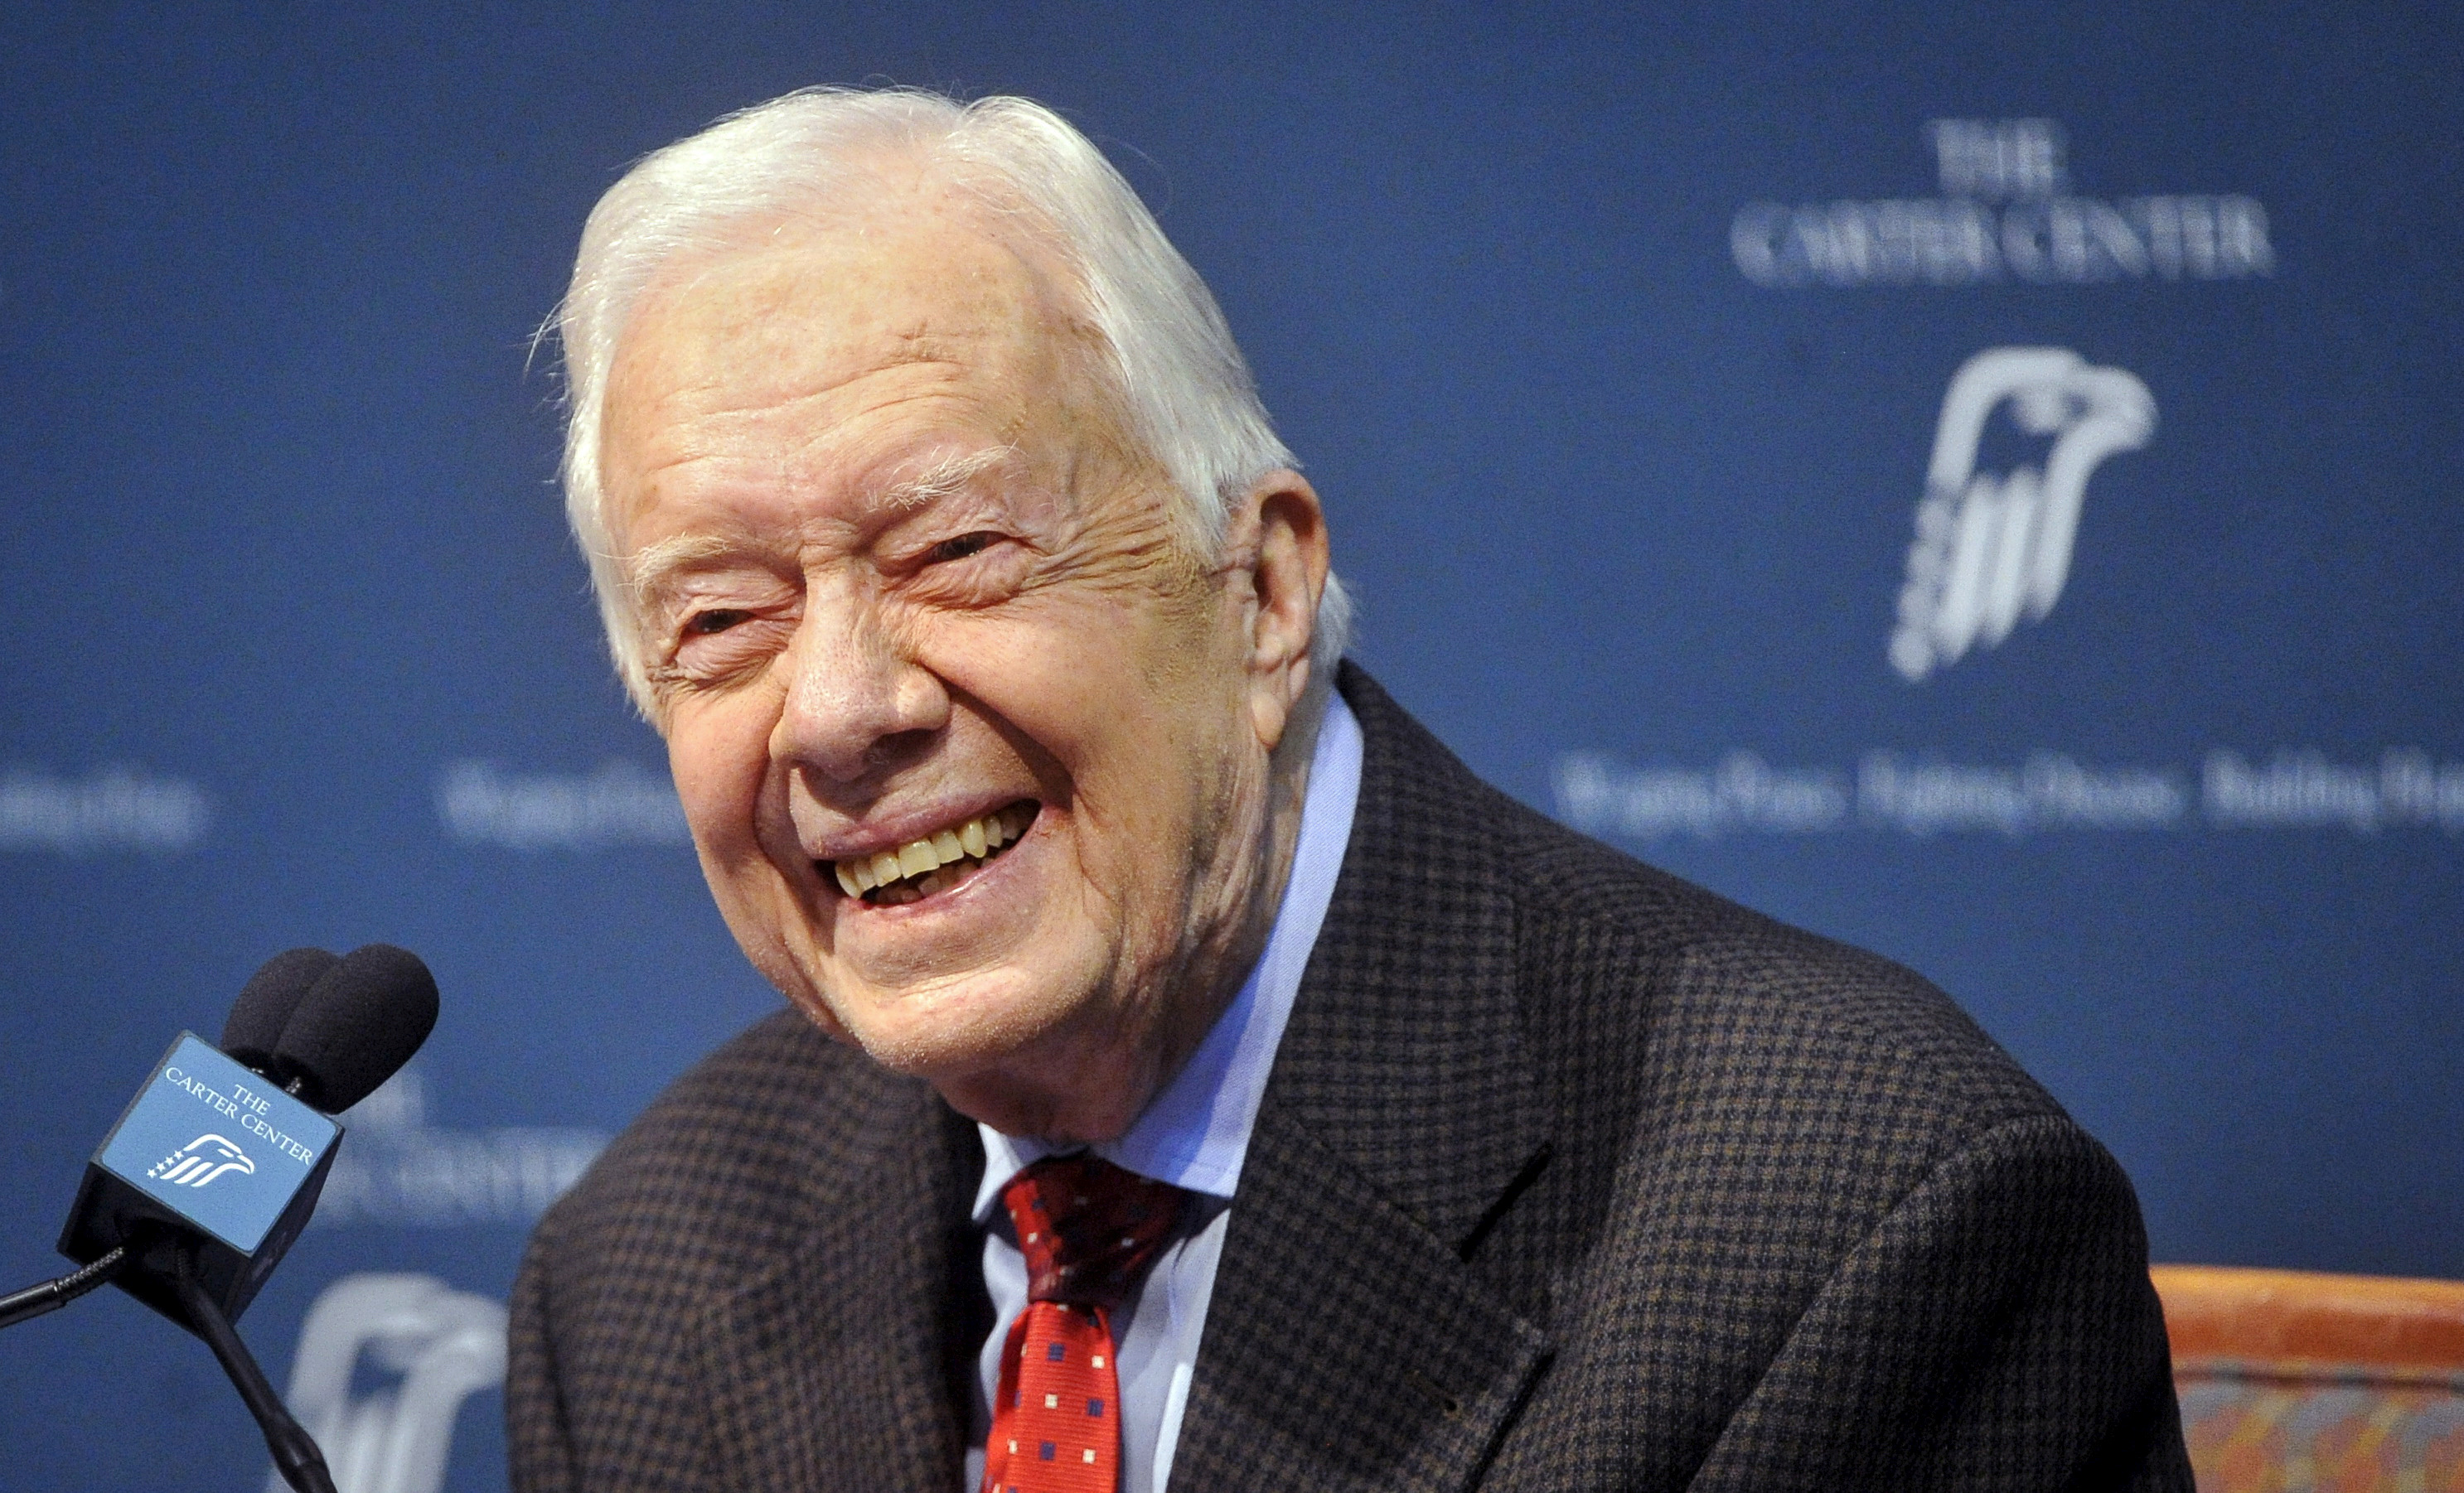 FILE PHOTO - Cựu Tổng thống Hoa Kỳ Jimmy Carter nhận câu hỏi từ giới truyền thông trong một cuộc họp báo tại Trung tâm Carter ở Atlanta